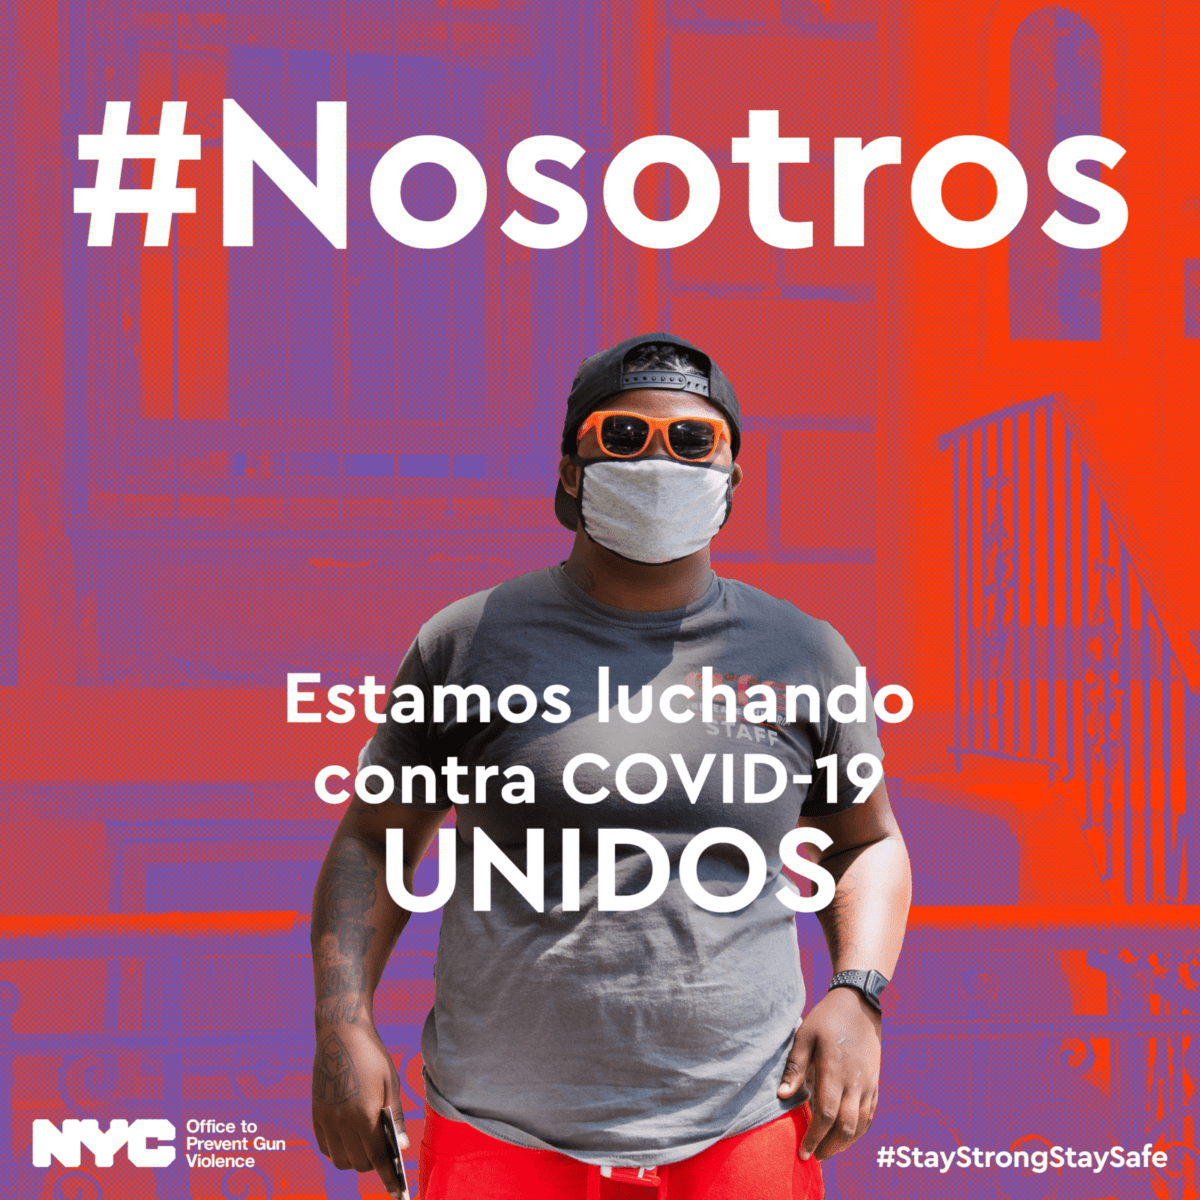 #Nosotros Estamos luchando contra COVID-19 UNIDOS